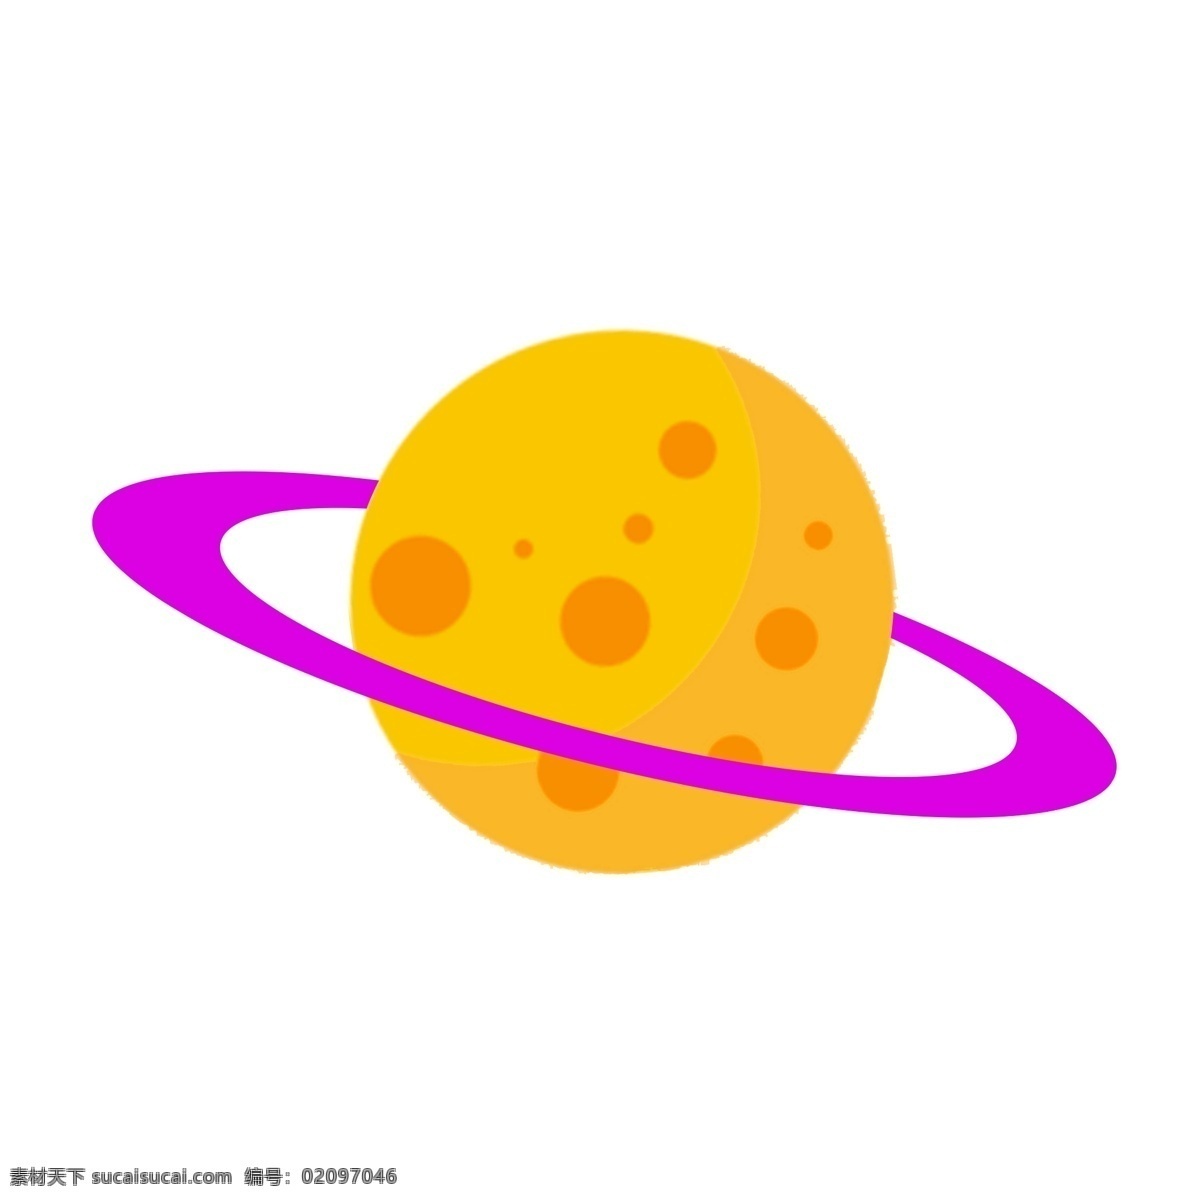 黄色 星球 紫色 星环 外 太空 黄色星球 紫色星环 外太空星球 美丽星球 太阳系 太空探索 地球 月球 矢量图 卡通宇宙